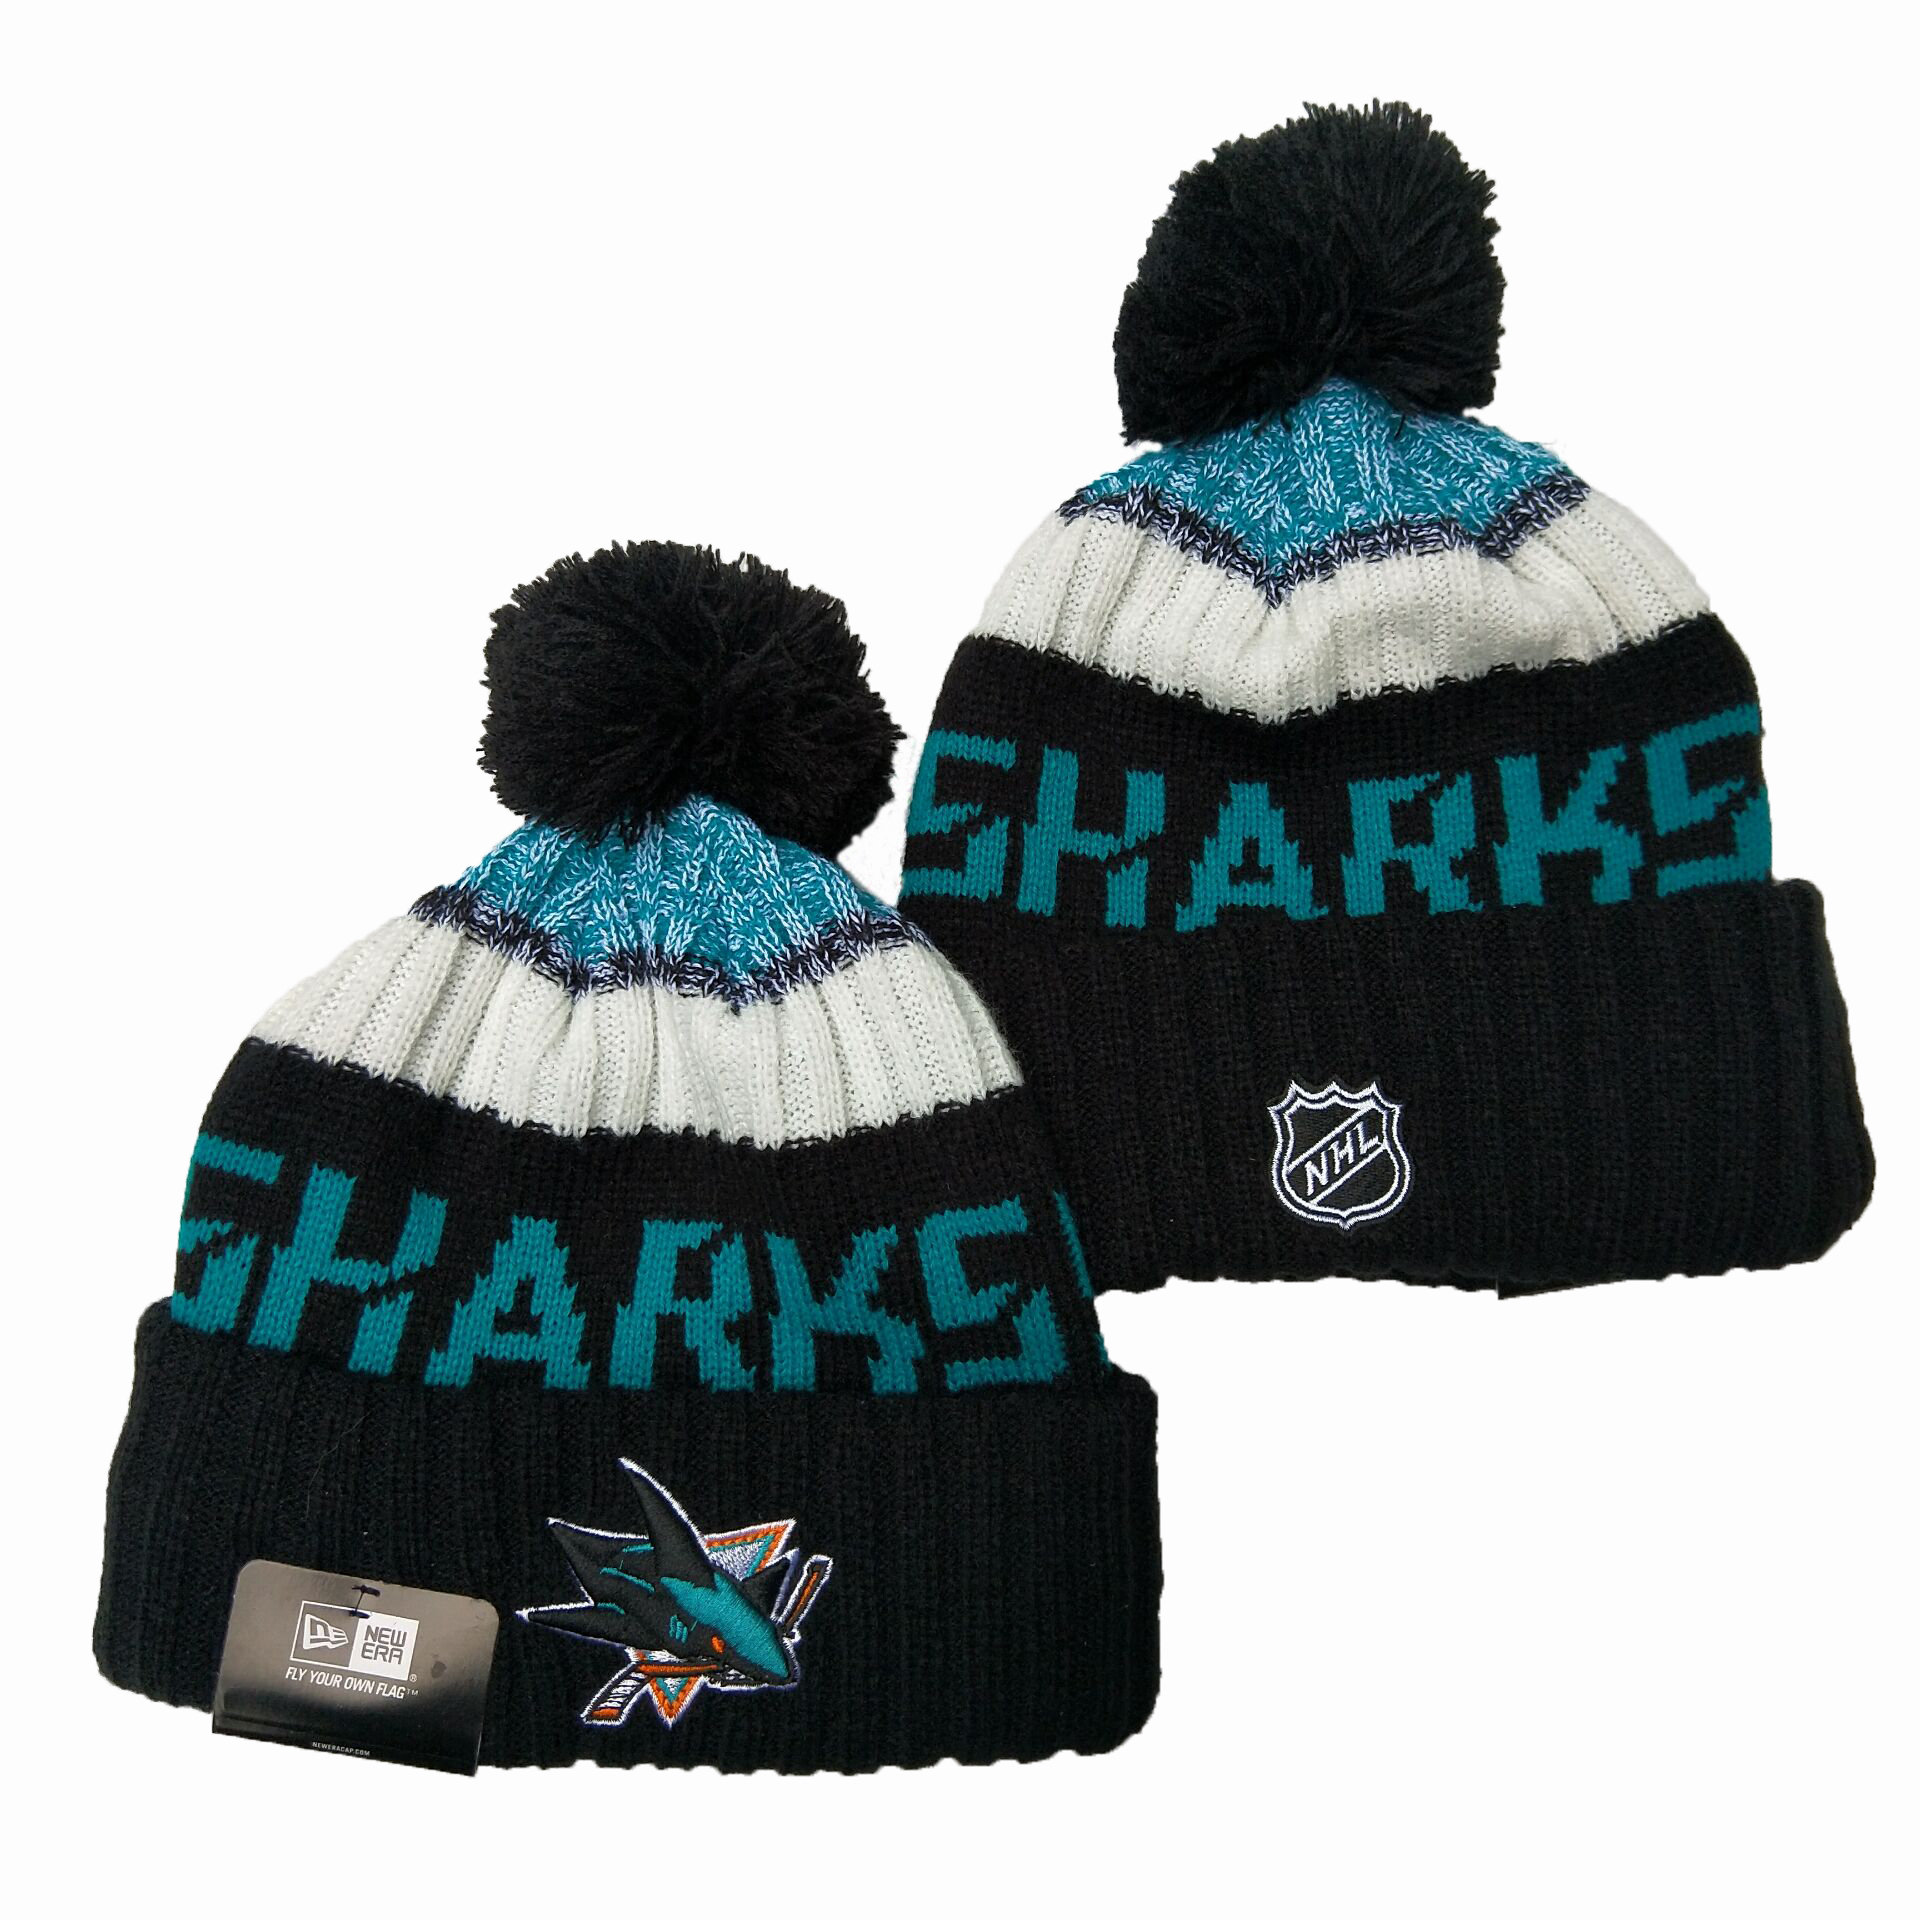 San Jose Sharks Knit Hats 001